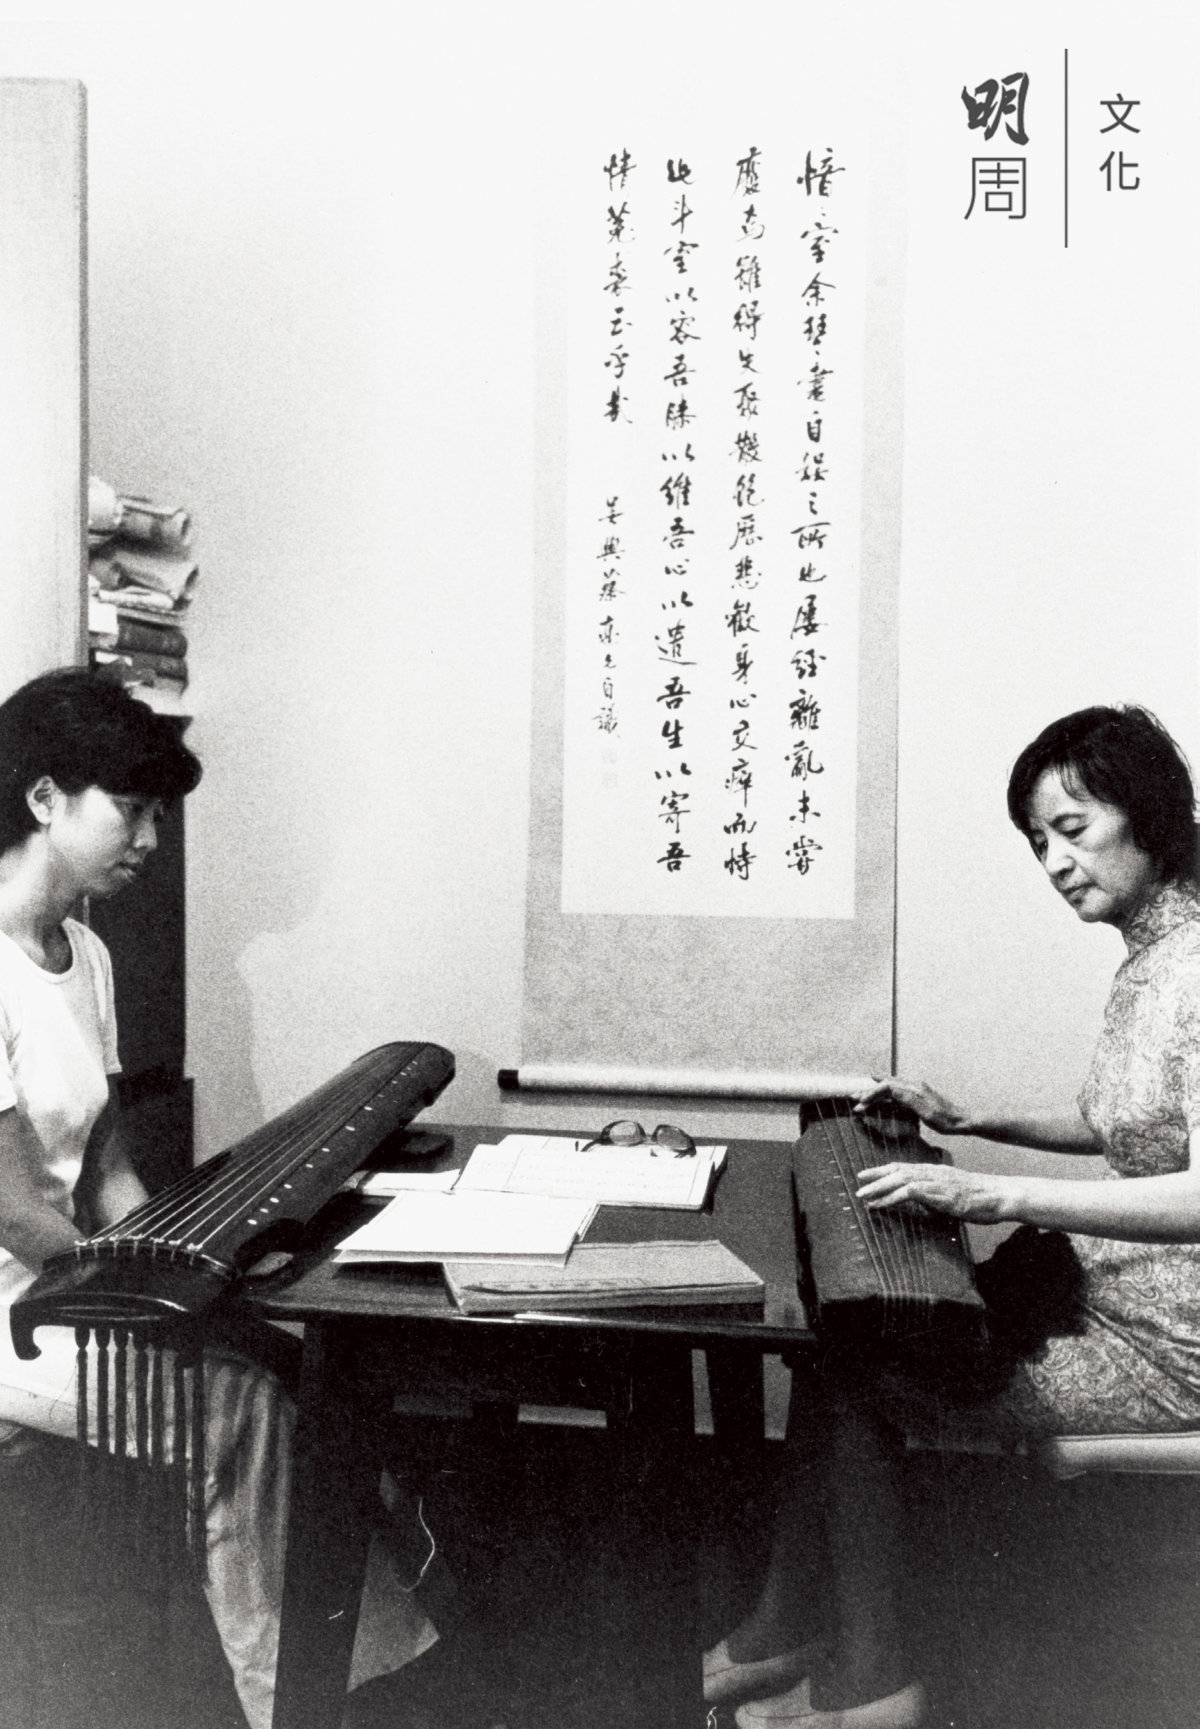 蔡德允(右)上課教授新曲時給劉楚華示範。照片攝於1970年代。圖片提供：郭茂基先生；圖片出處：《香江琴緣》展覽圖錄(康樂及文化事務署出版)